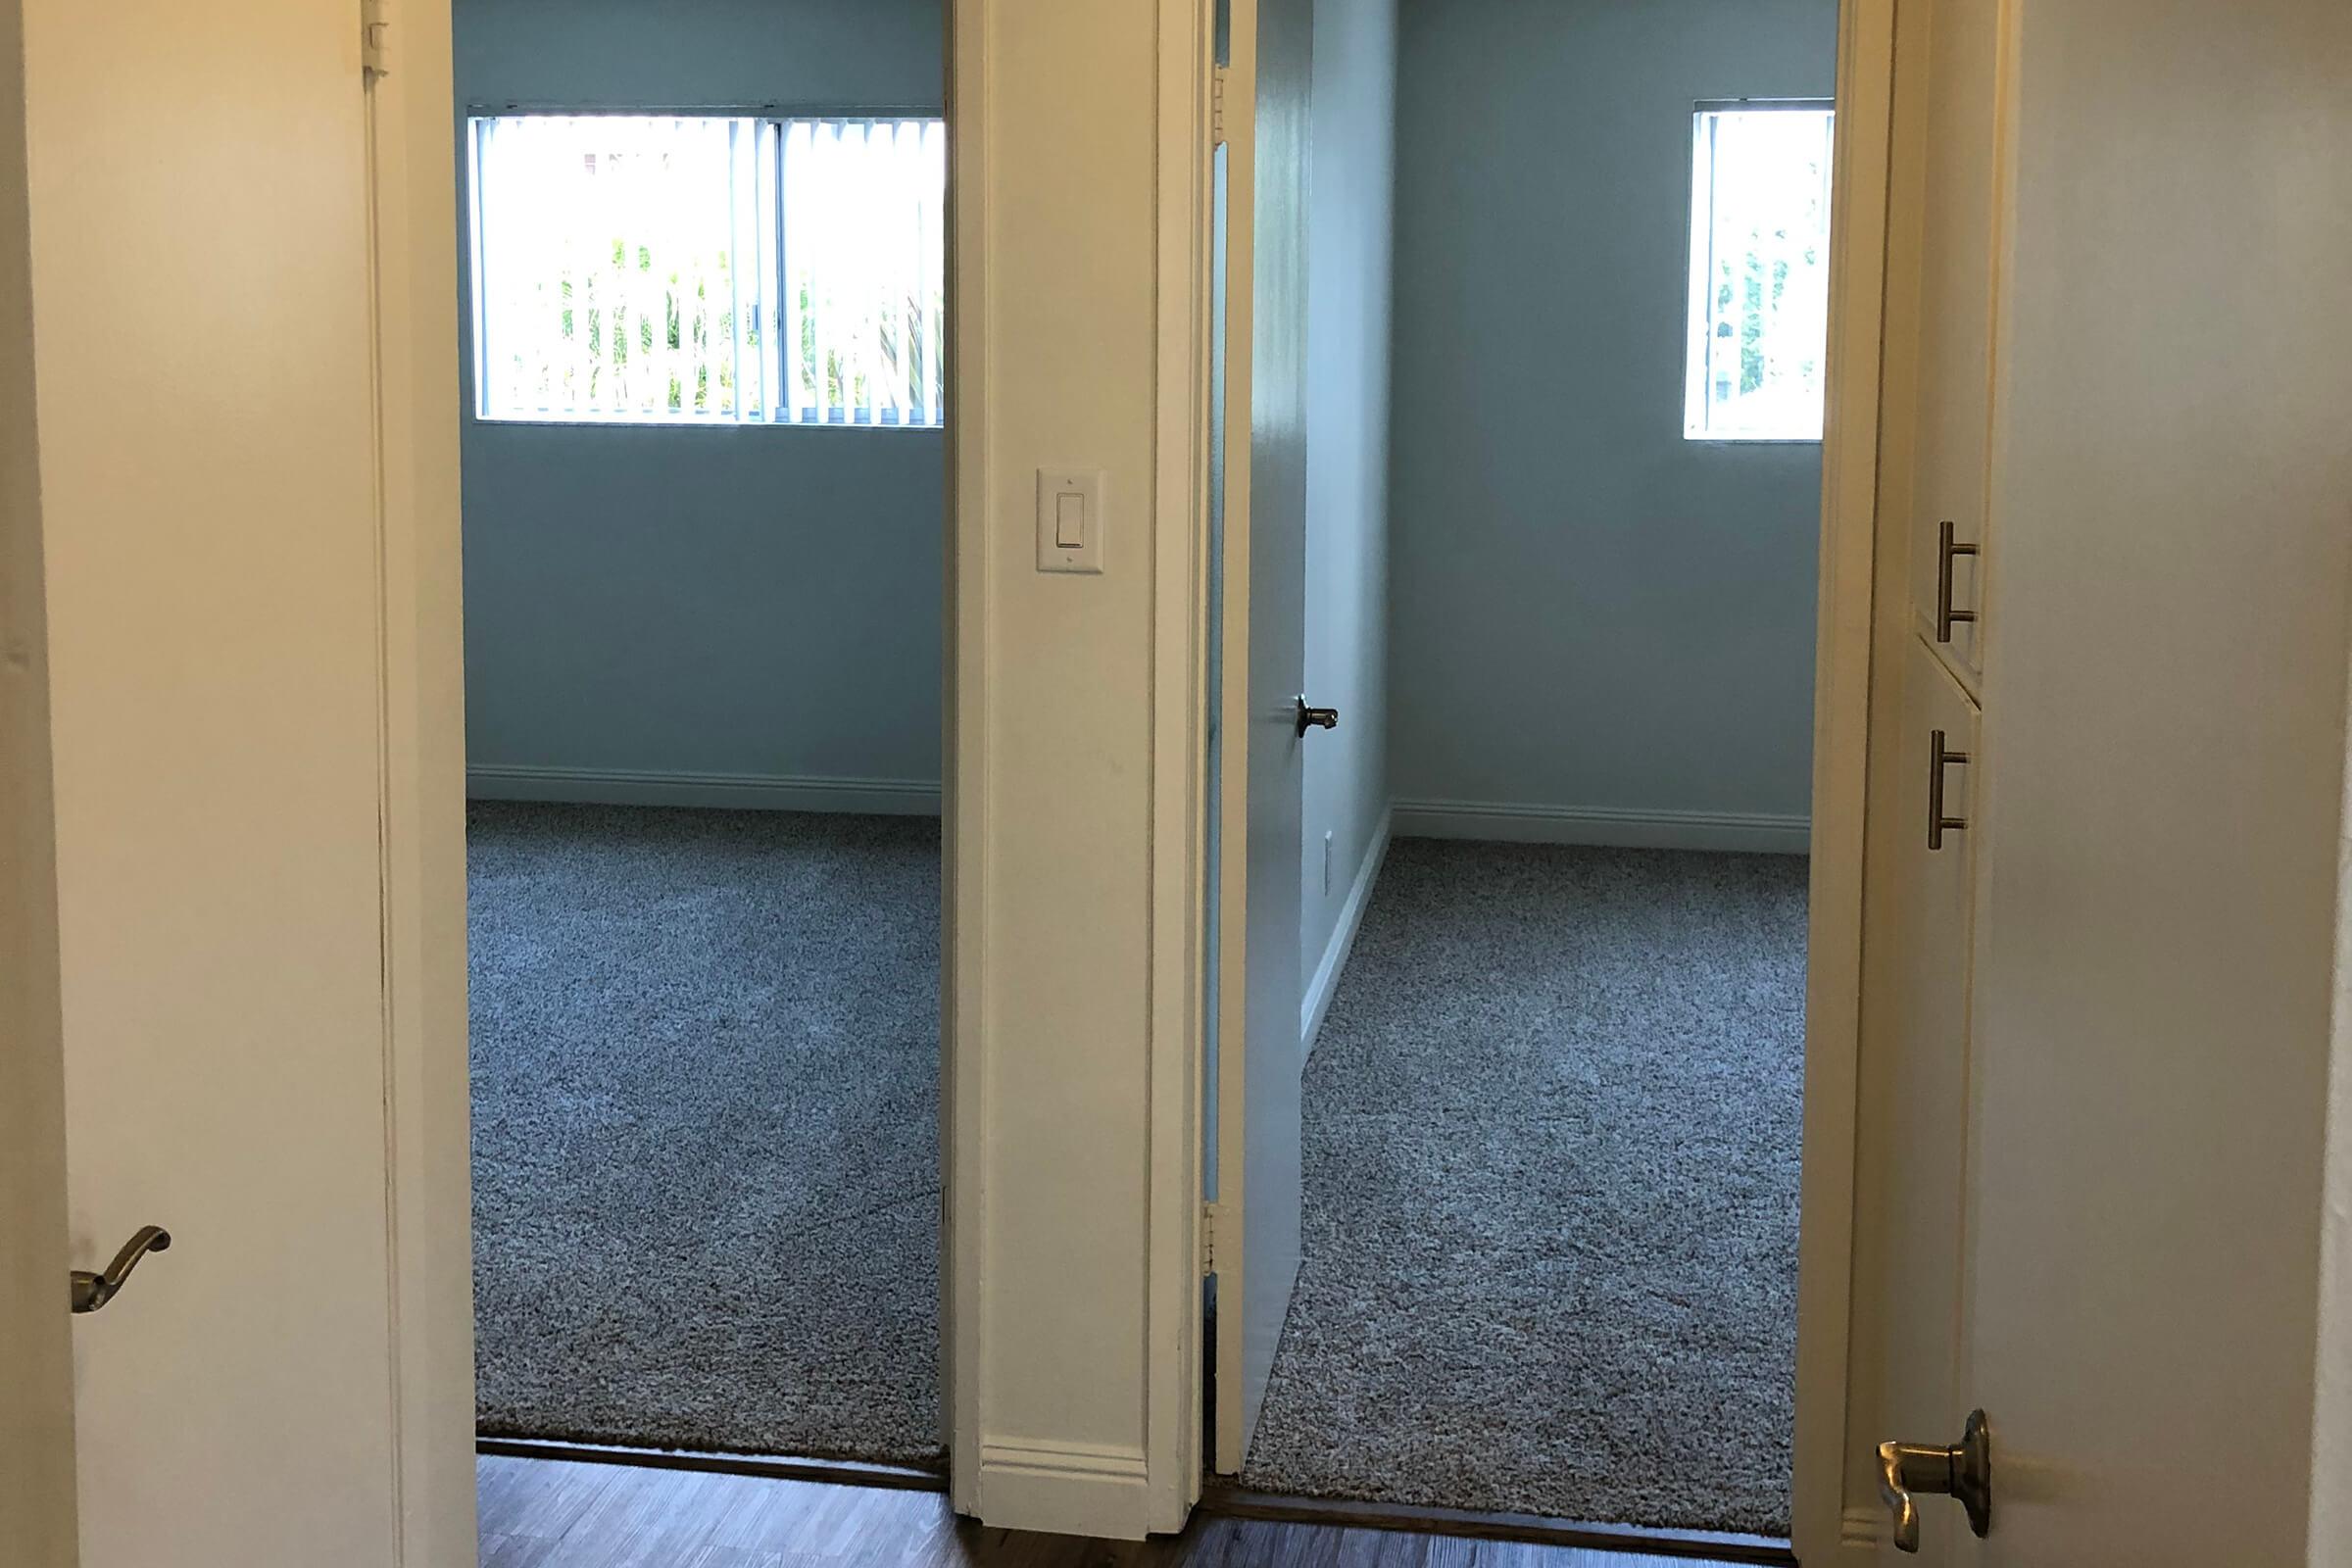 Open bedroom doors with carpet